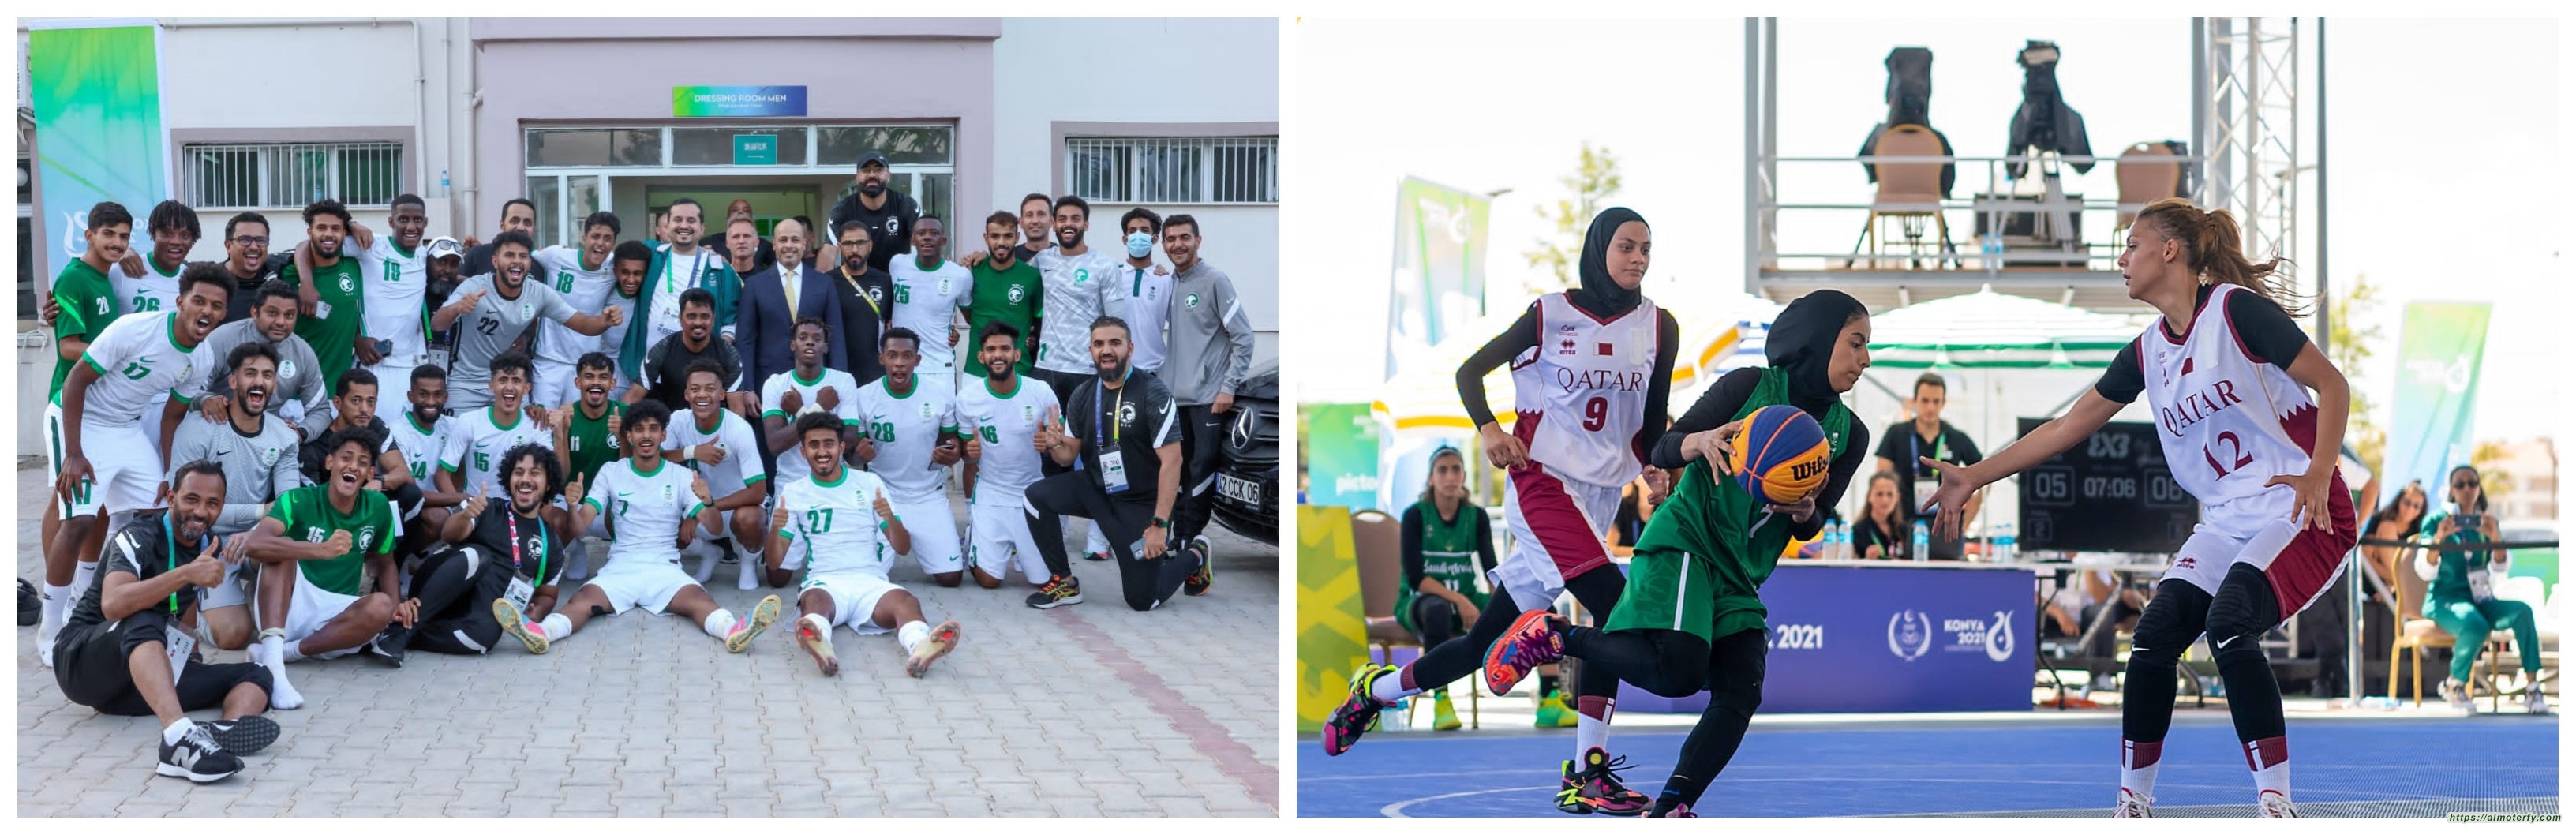 العثمان رفع رصيدنا لـ20 ميدالية و أخضر القدم يعود لنهائي الإسلامية بعد 17 عام و سيدات السلة تكسب قطر